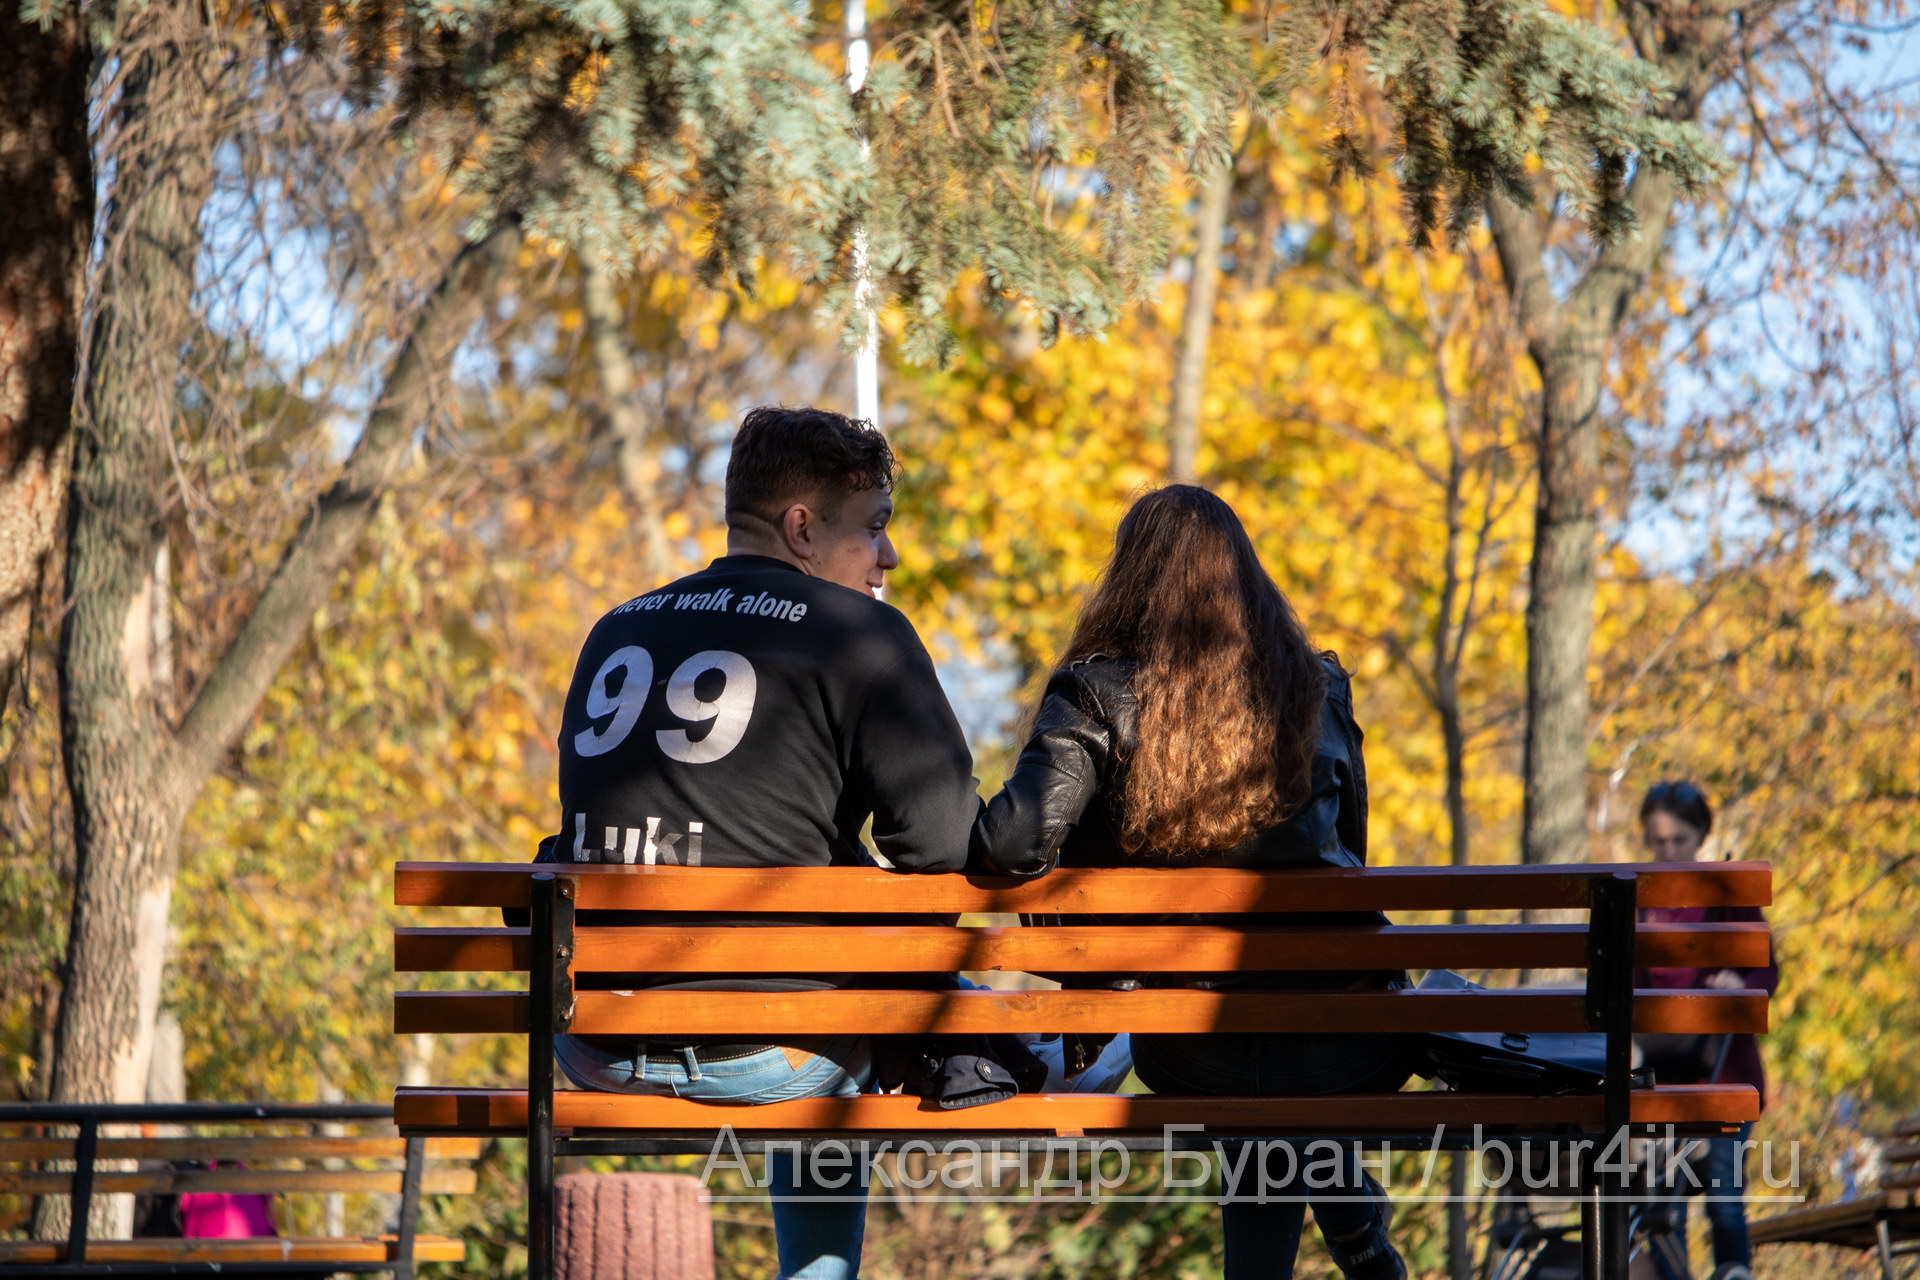 Парень и девушка общаются, сидя на скамейке в осенний парк - Украина, Одесса, 17,10,2019